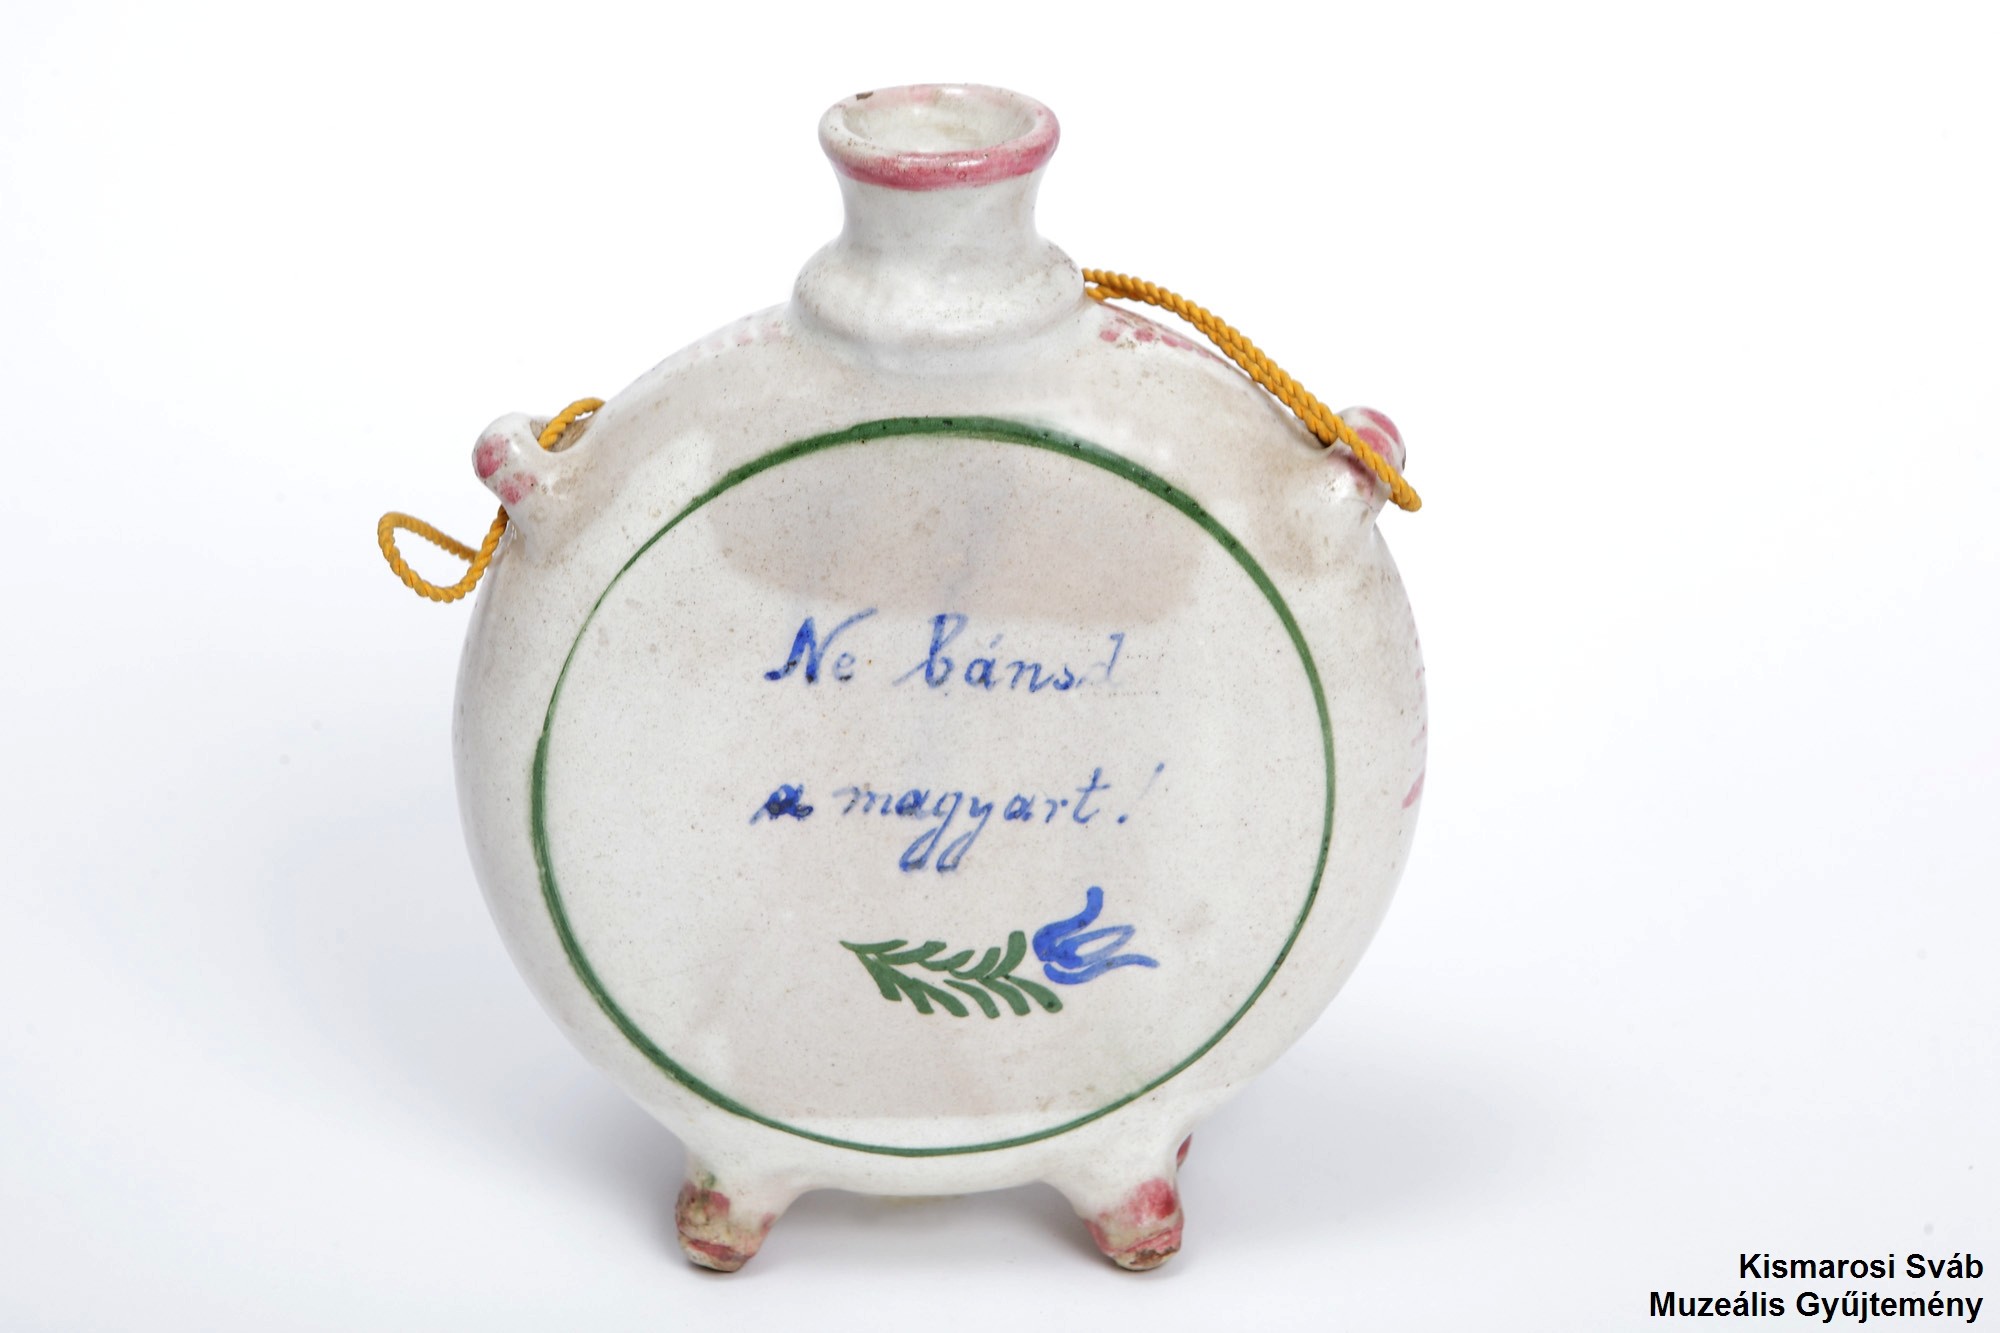 Cserép kulacs (emlékkulacs); Keramik-Feldflasche (Andenken); (Kismarosi Sváb Muzeális Gyűjtemény RR-F)